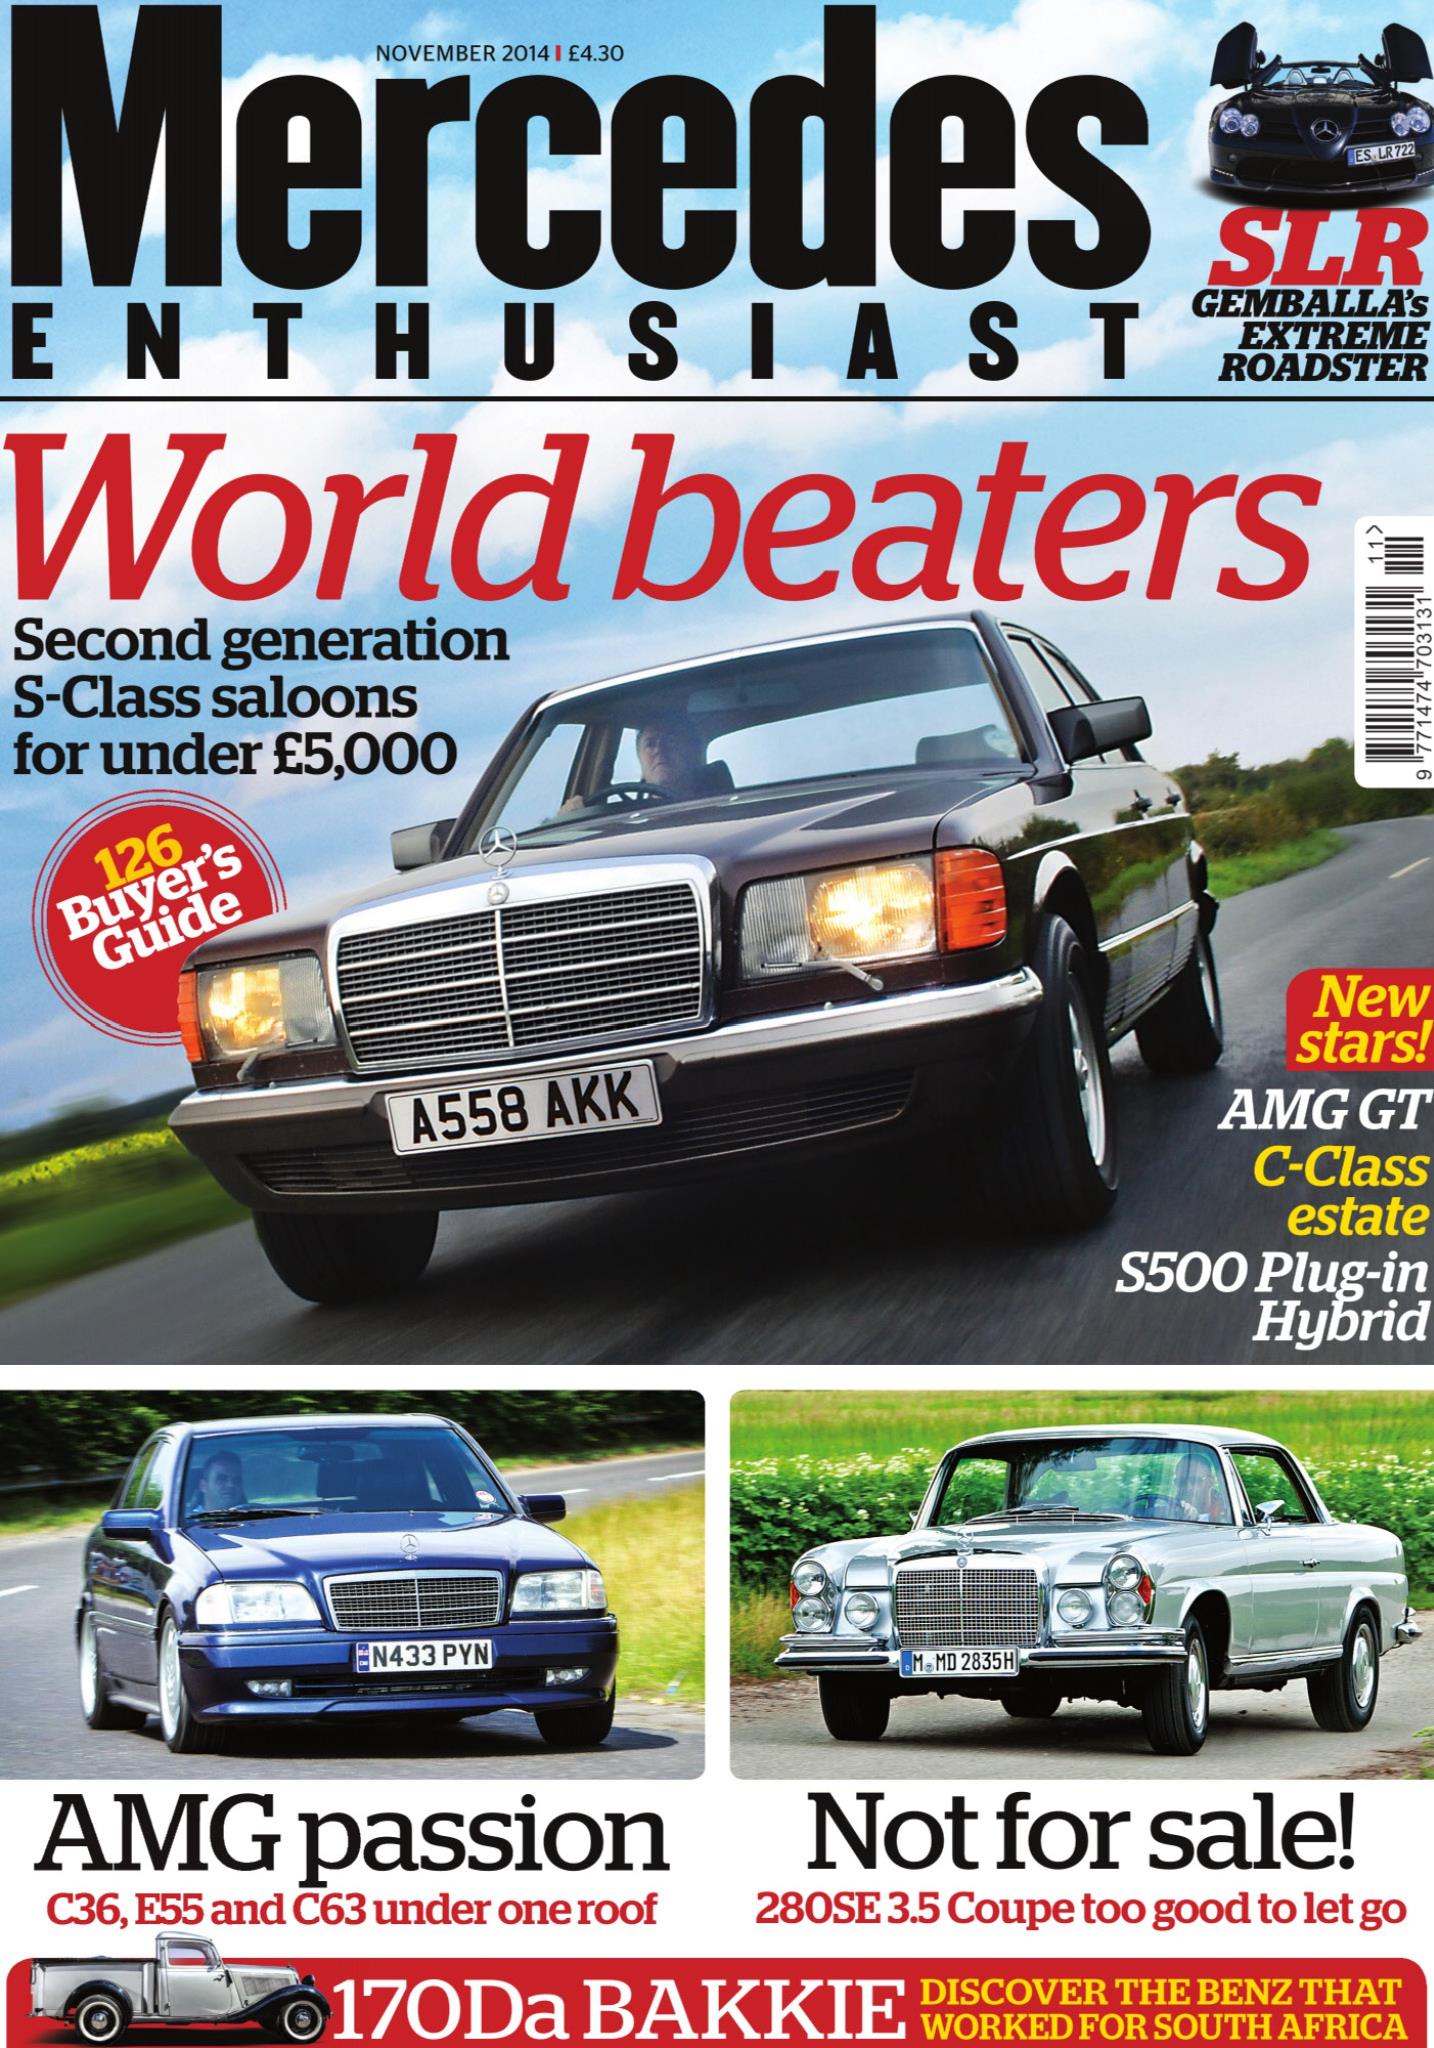 Журнал Mercedes enthusiast. november 2014